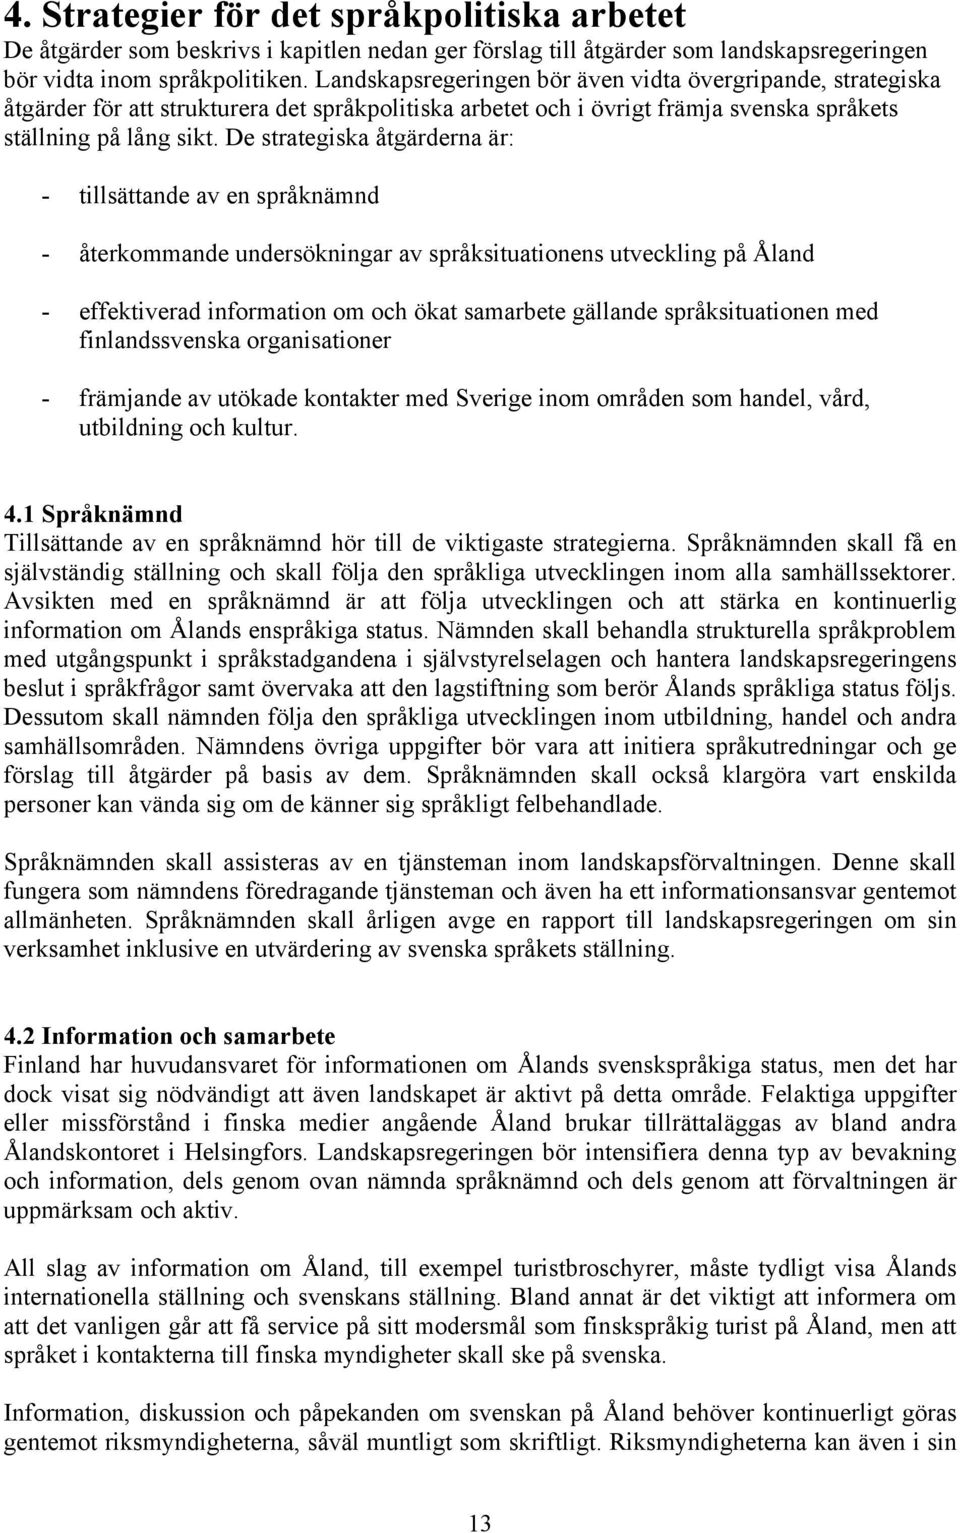 De strategiska åtgärderna är: - tillsättande av en språknämnd - återkommande undersökningar av språksituationens utveckling på Åland - effektiverad information om och ökat samarbete gällande